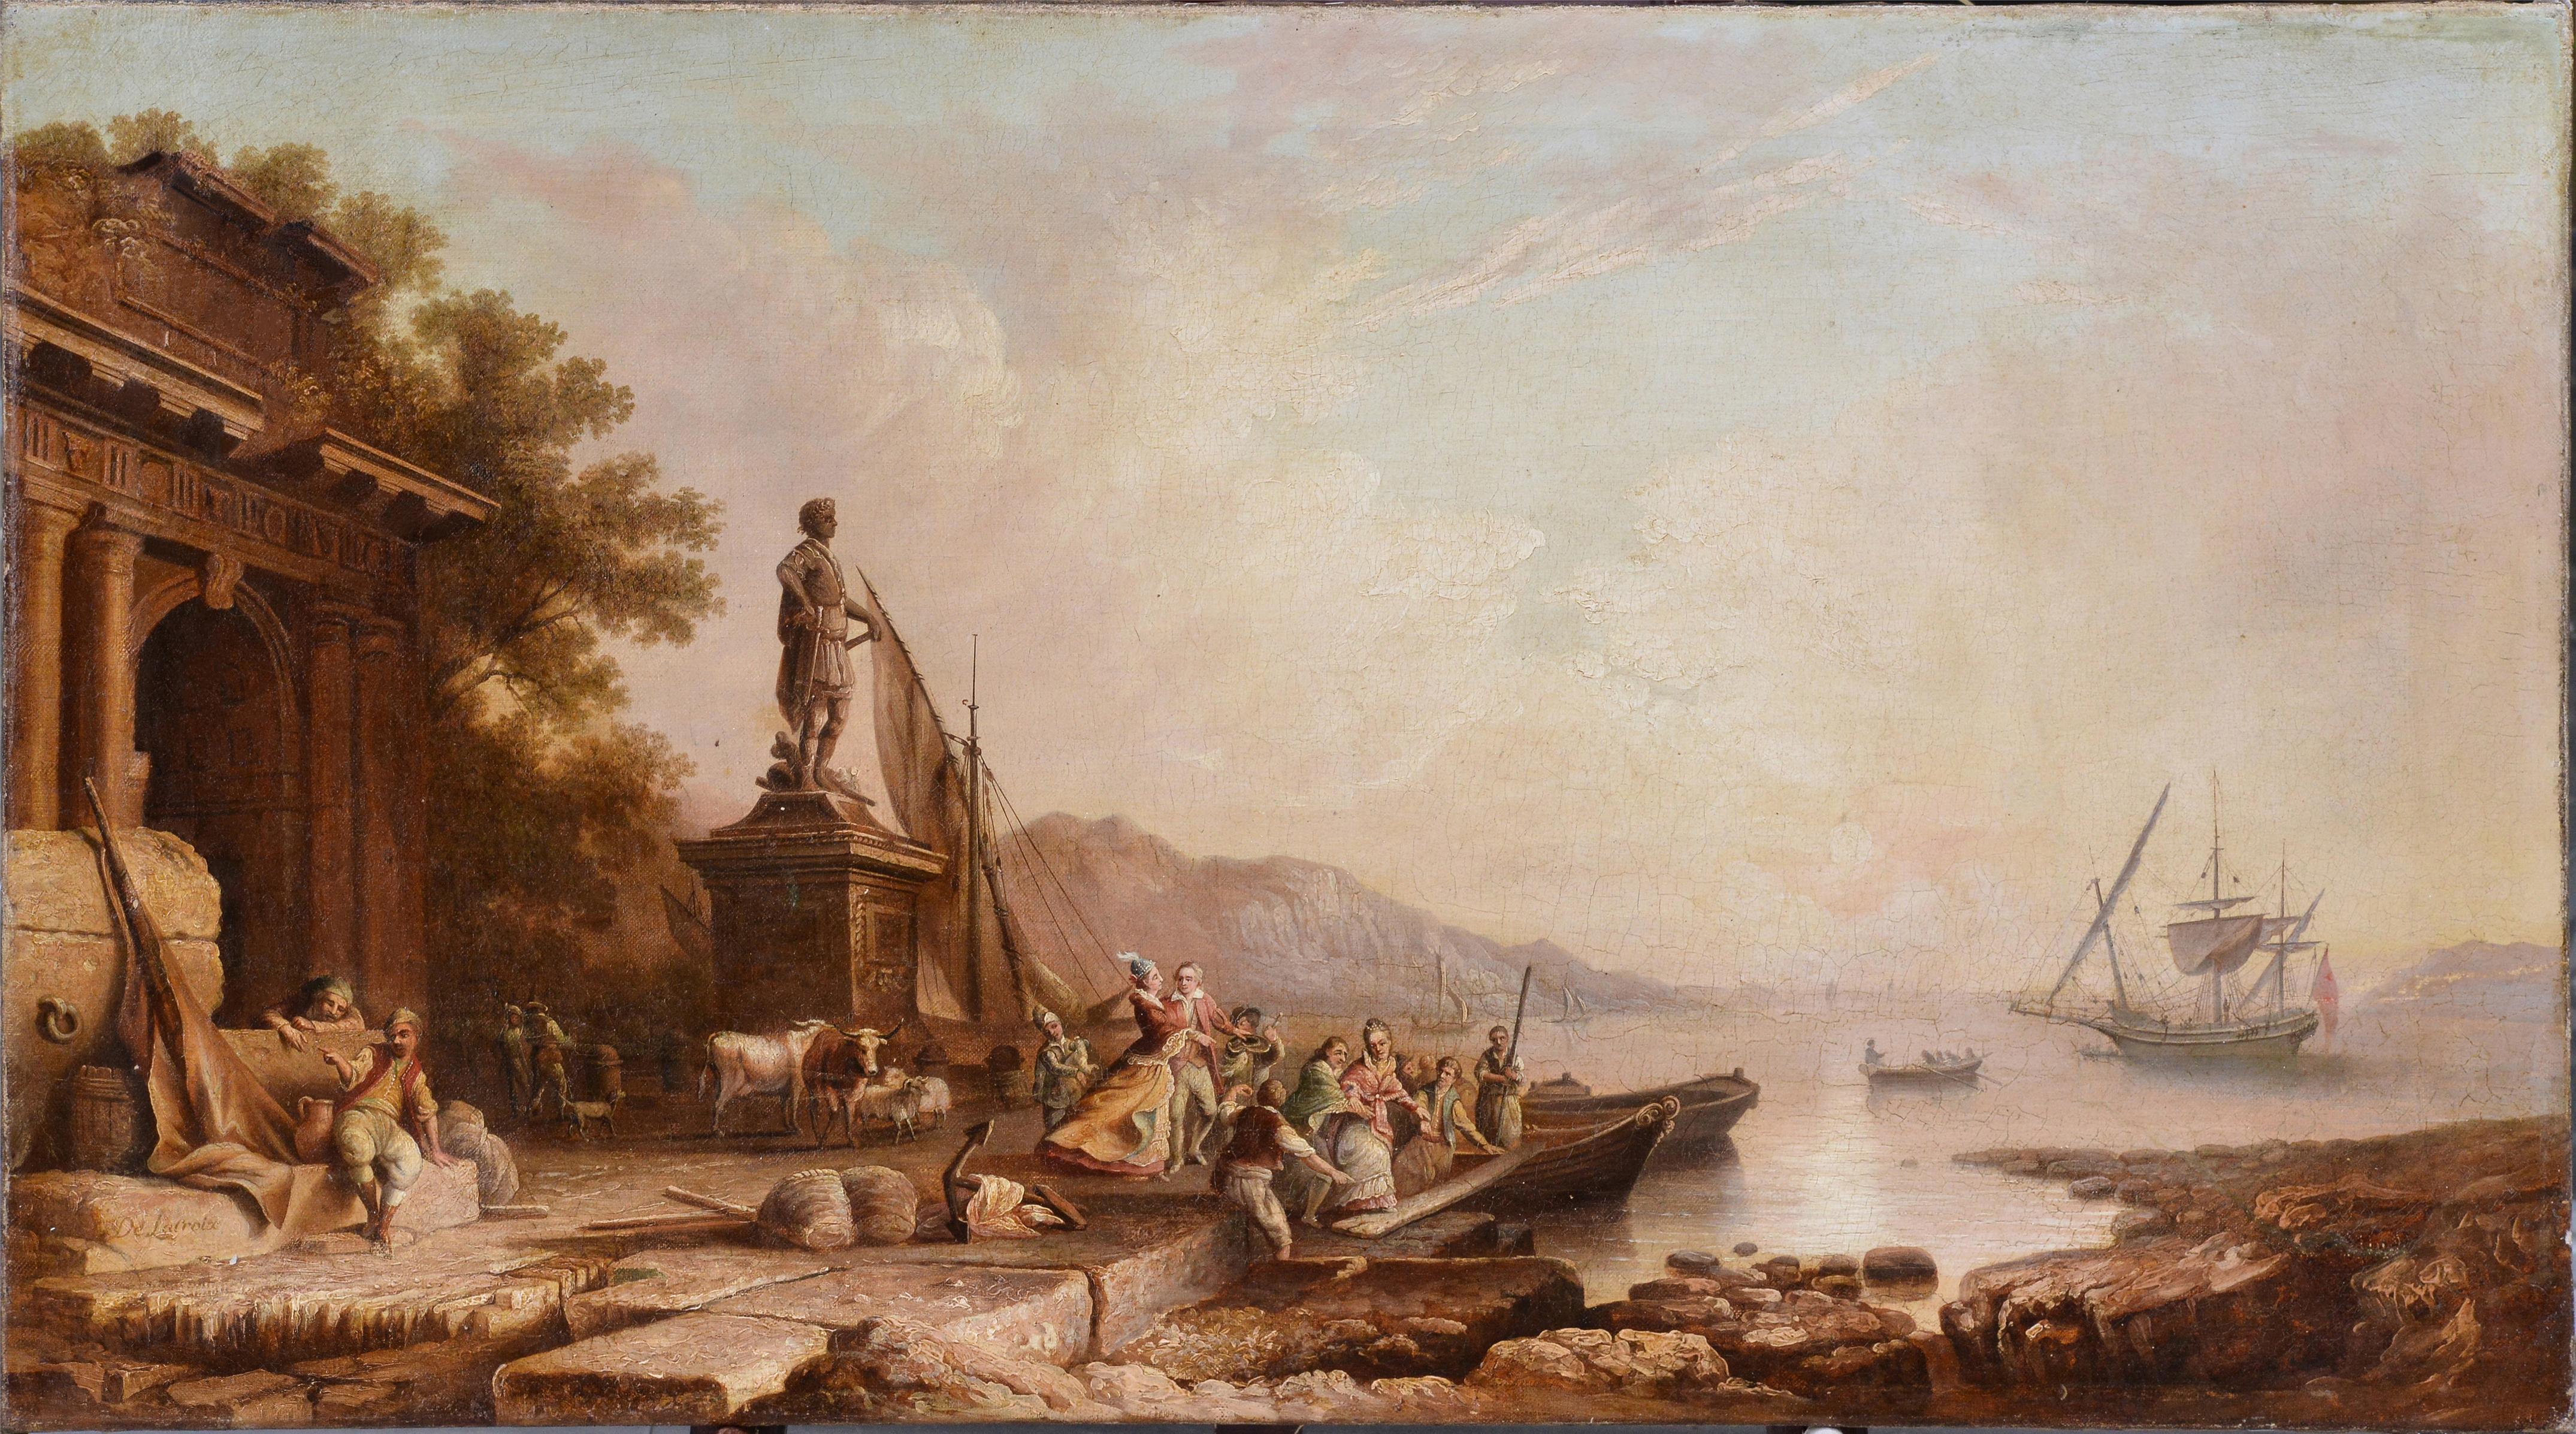 Navire quittant la baie au lever du soleil Paysage marin français 18e siècle Peinture à l'huile rococo